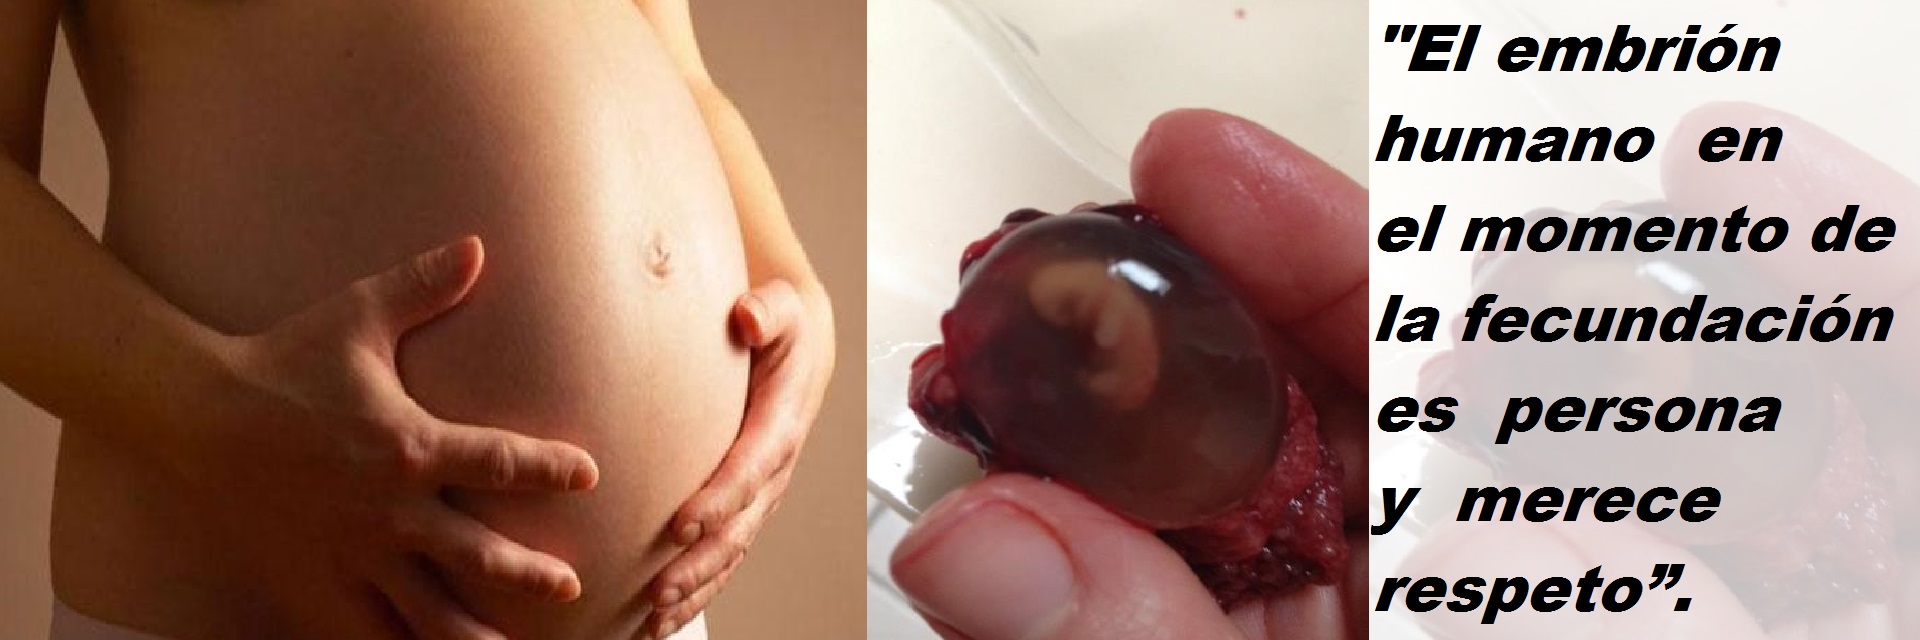 El embrión es un ser humano individual, no una parte de la madre